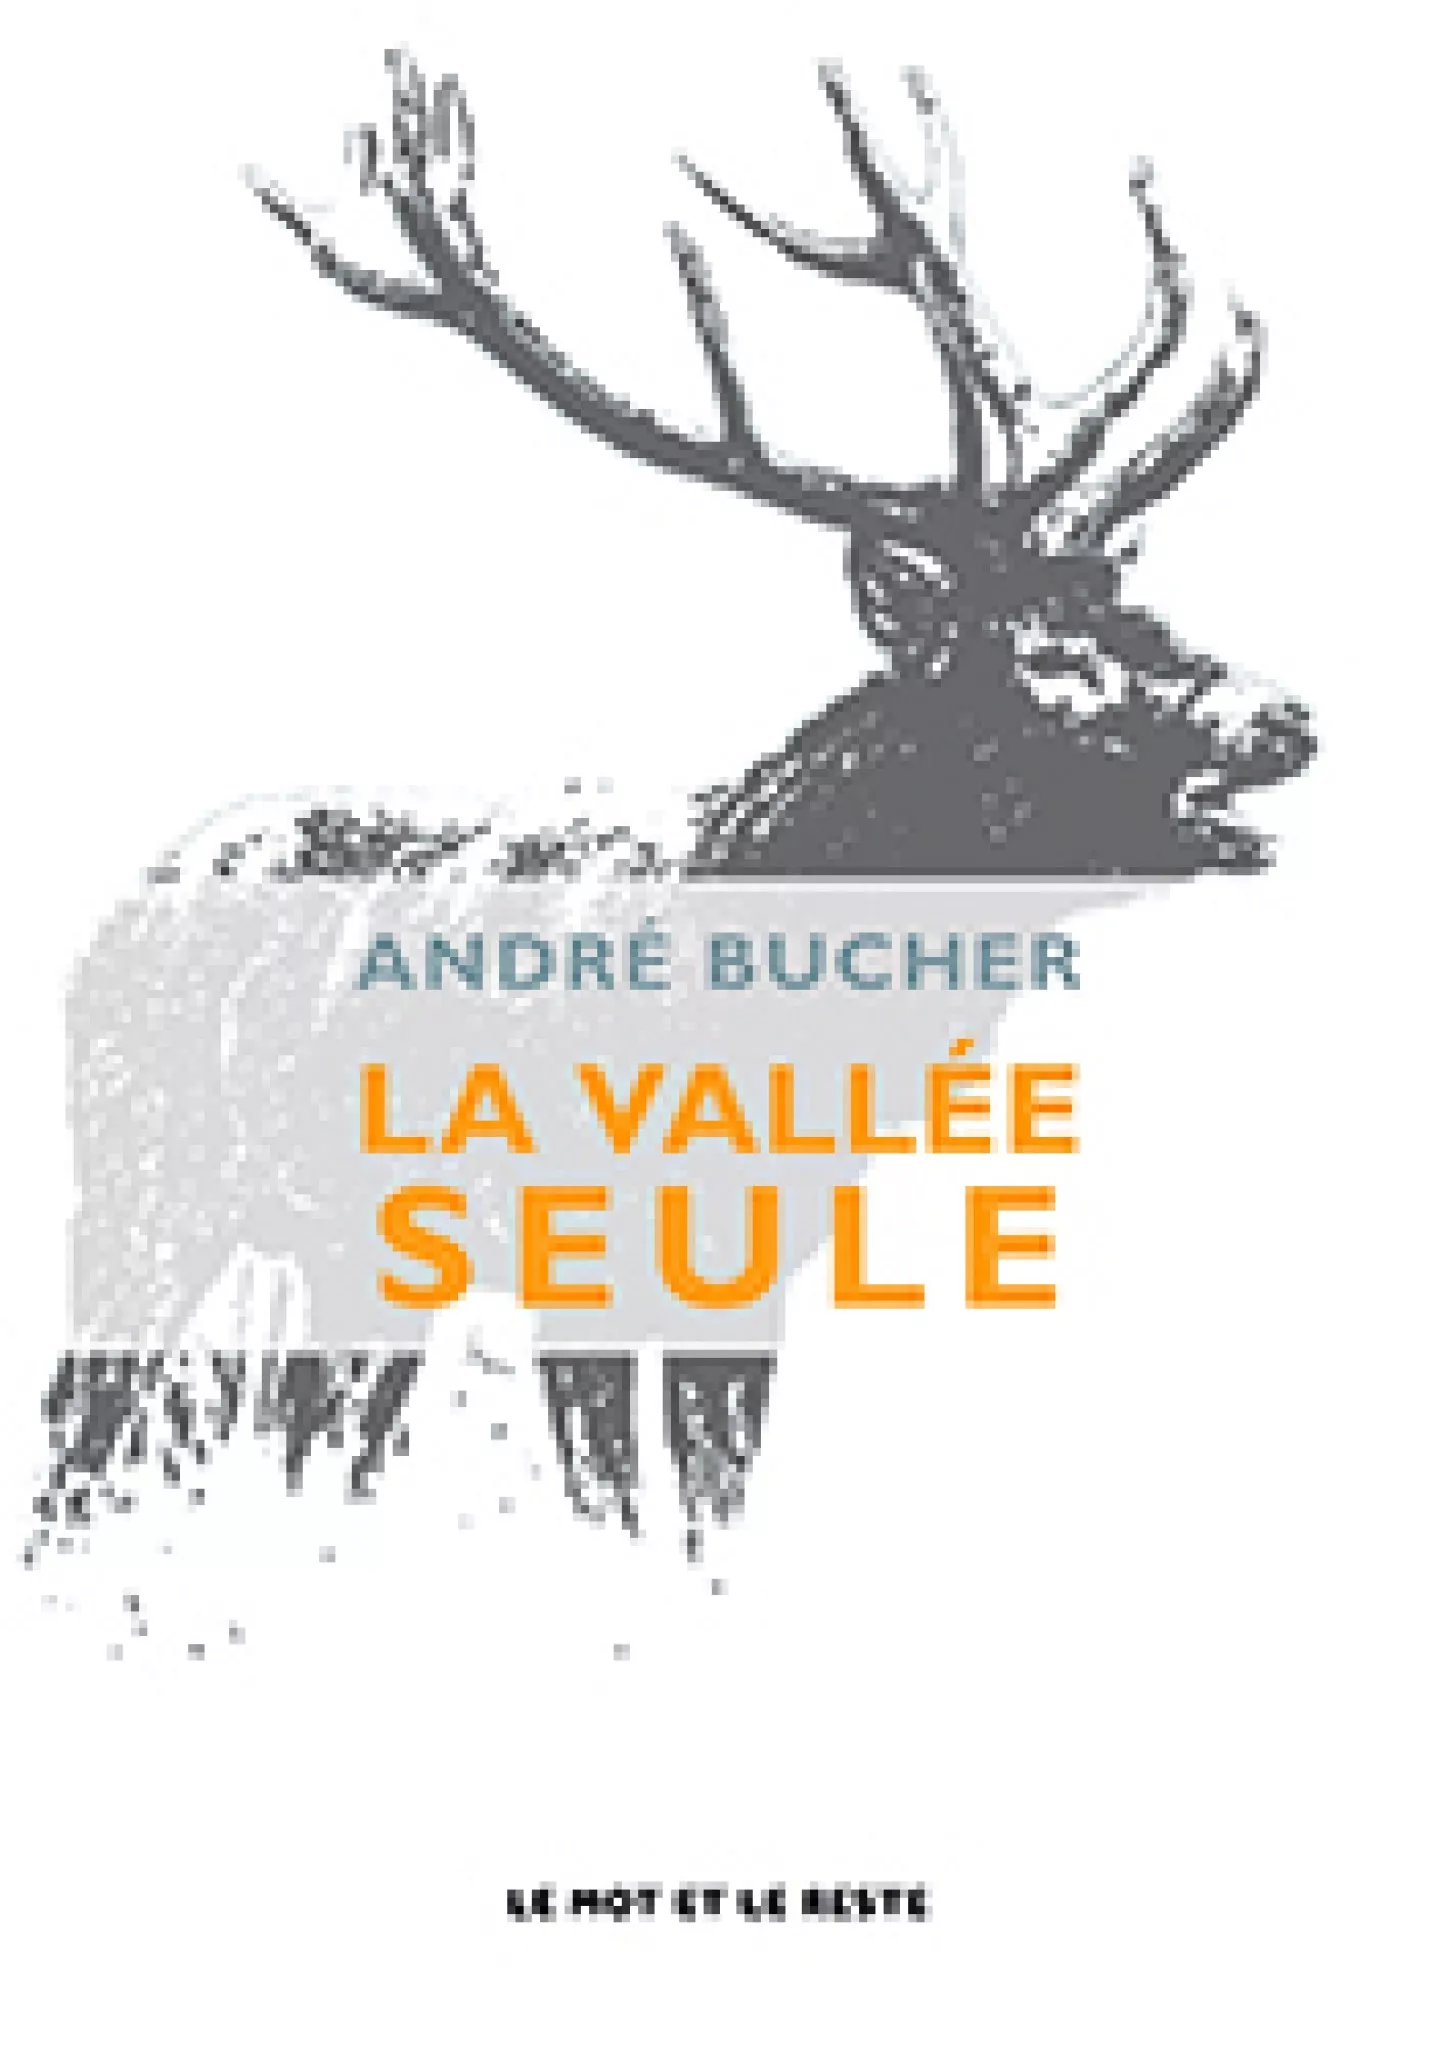 La Vallée seule, André Bucher, roman, éditions le mot et le reste, 2013